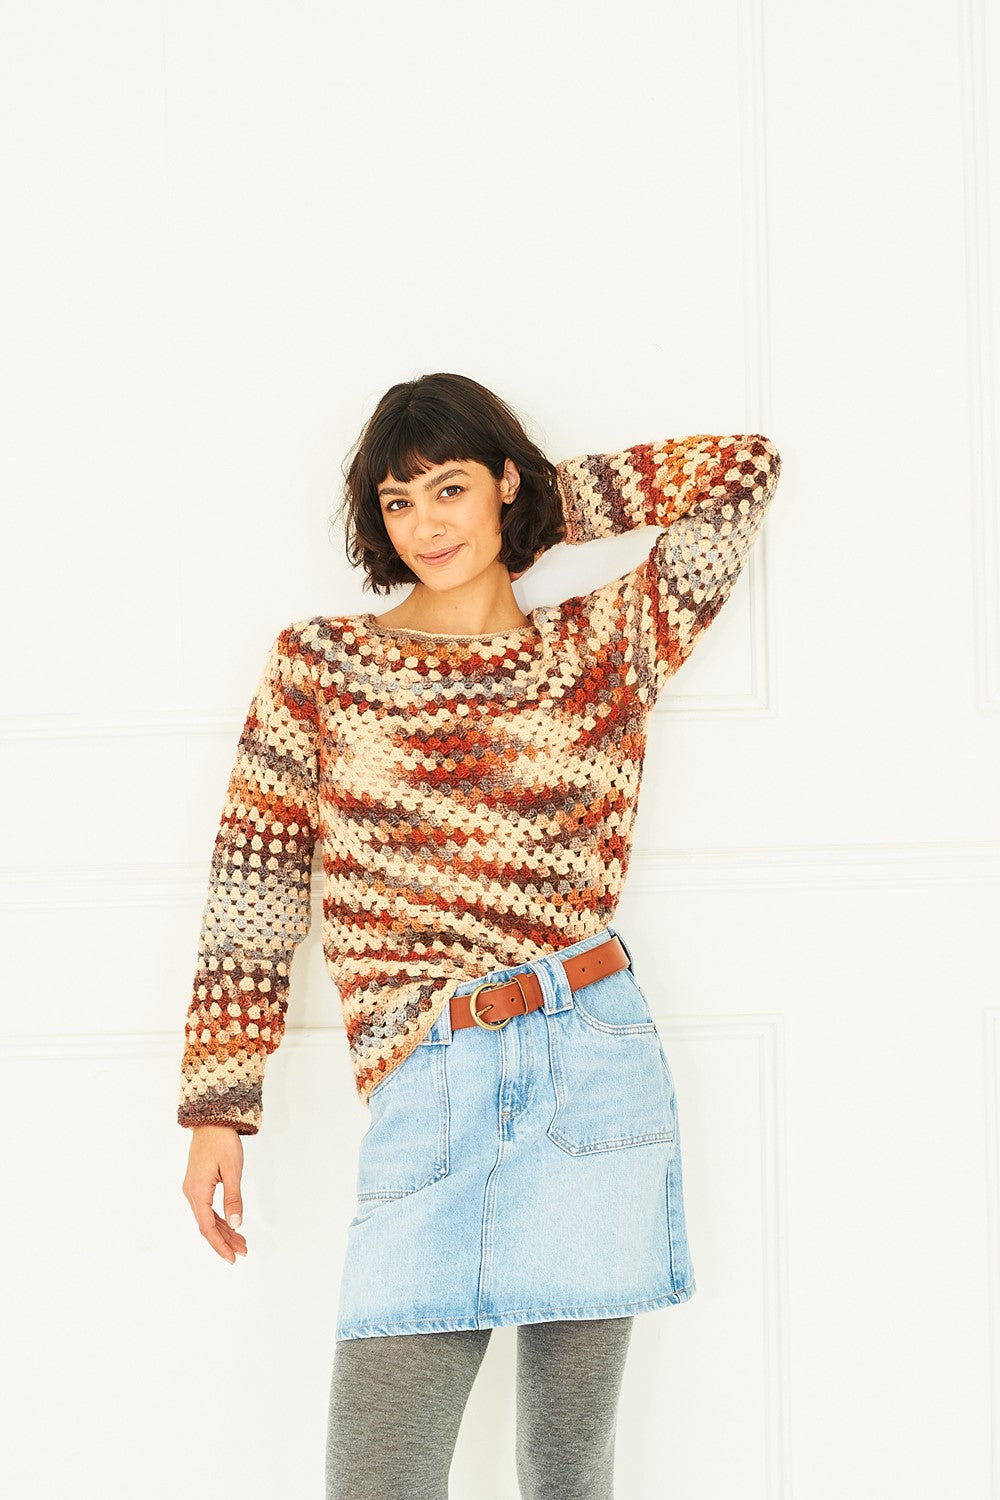 Stylecraft Pattern 10038: Crochet Sweaters (digital download)